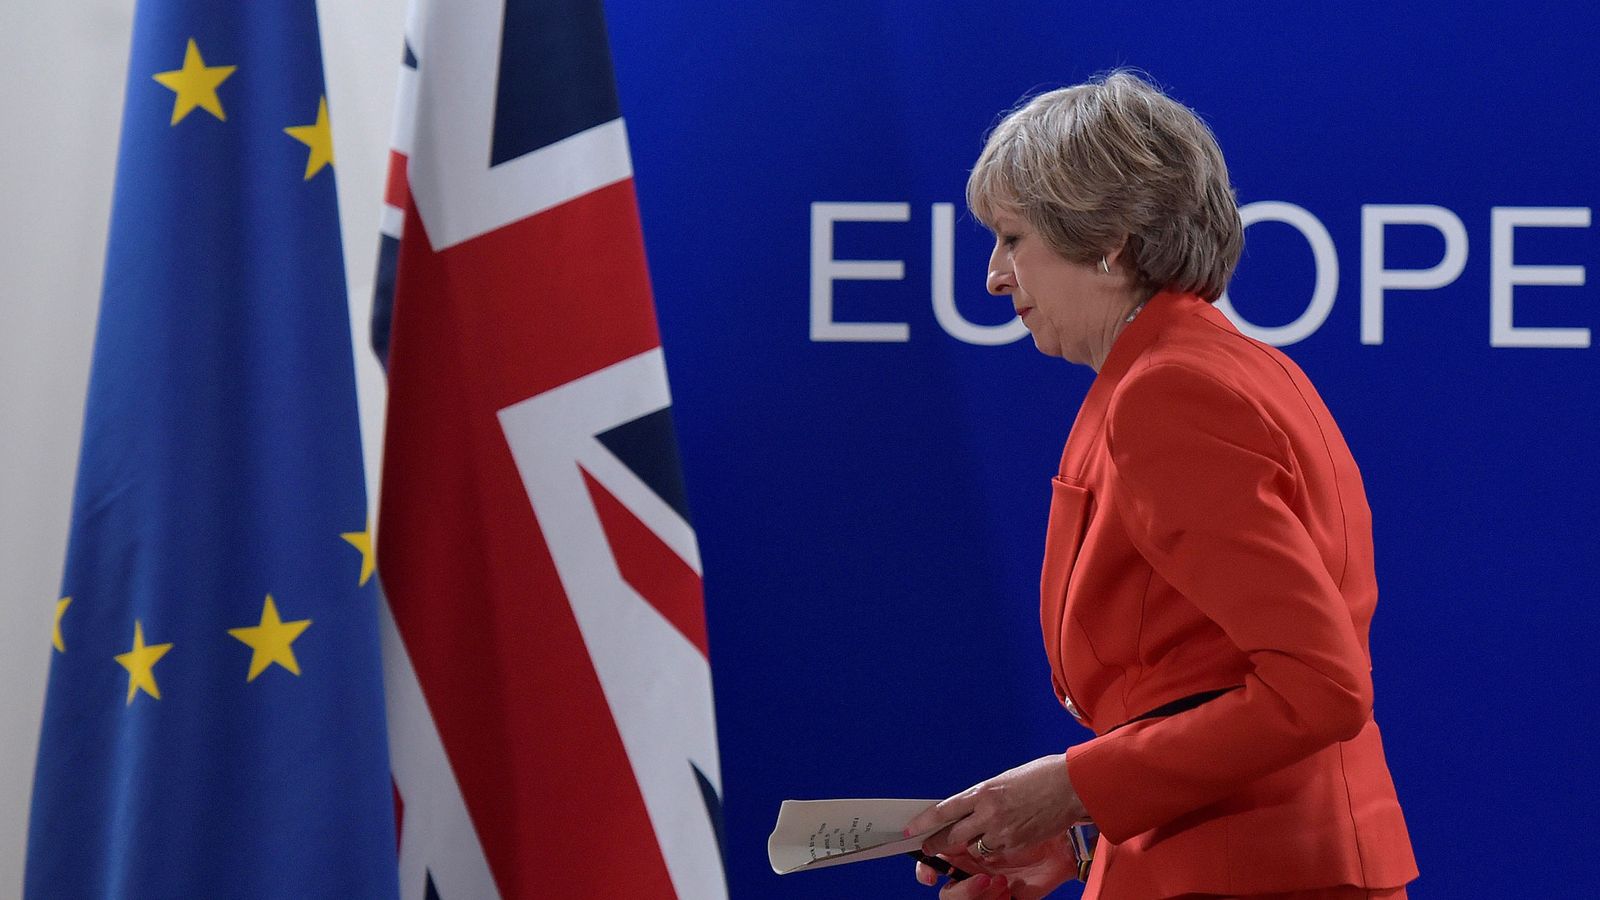 Foto: La primera ministra del Reino Unido en una conferencia en Bruselas. (Reuters)